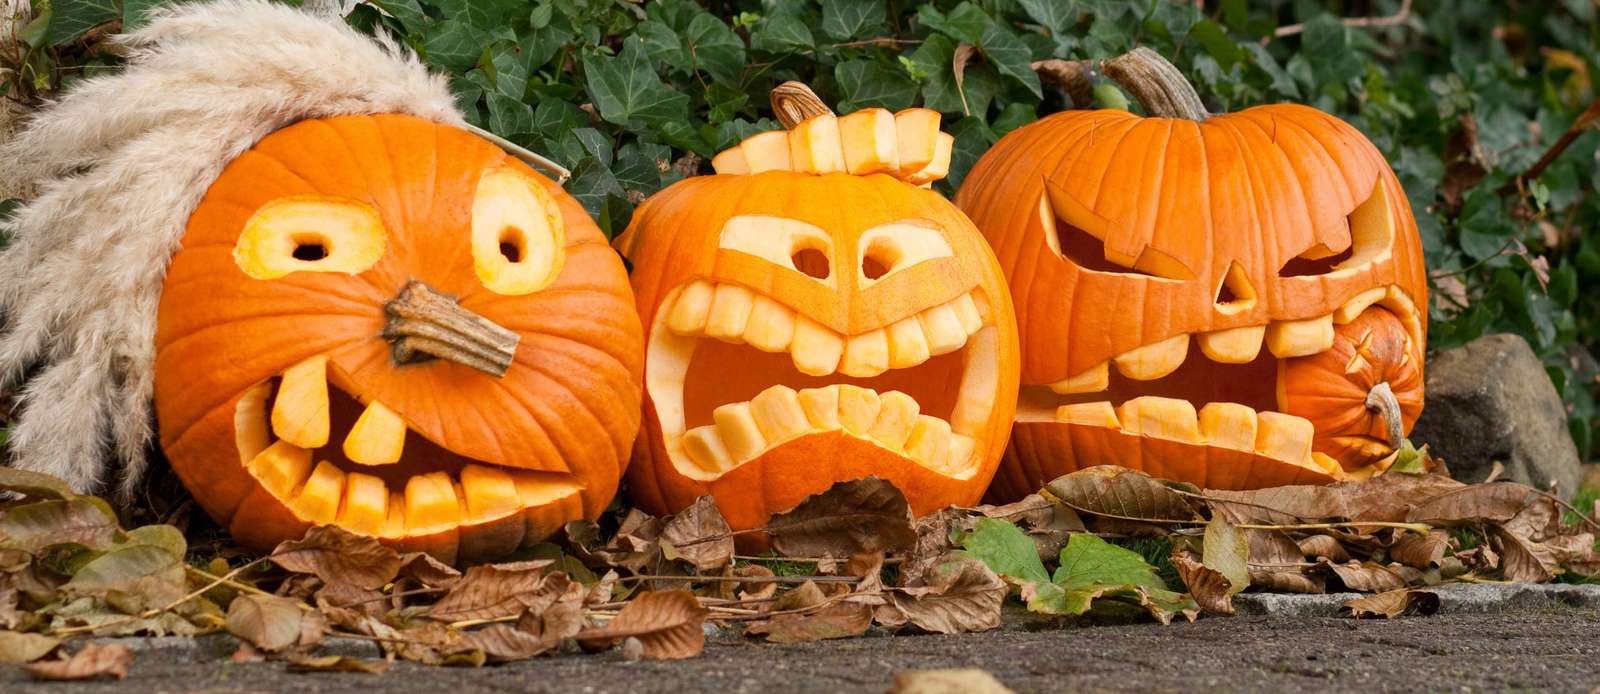 jigsaw pumpkin carving